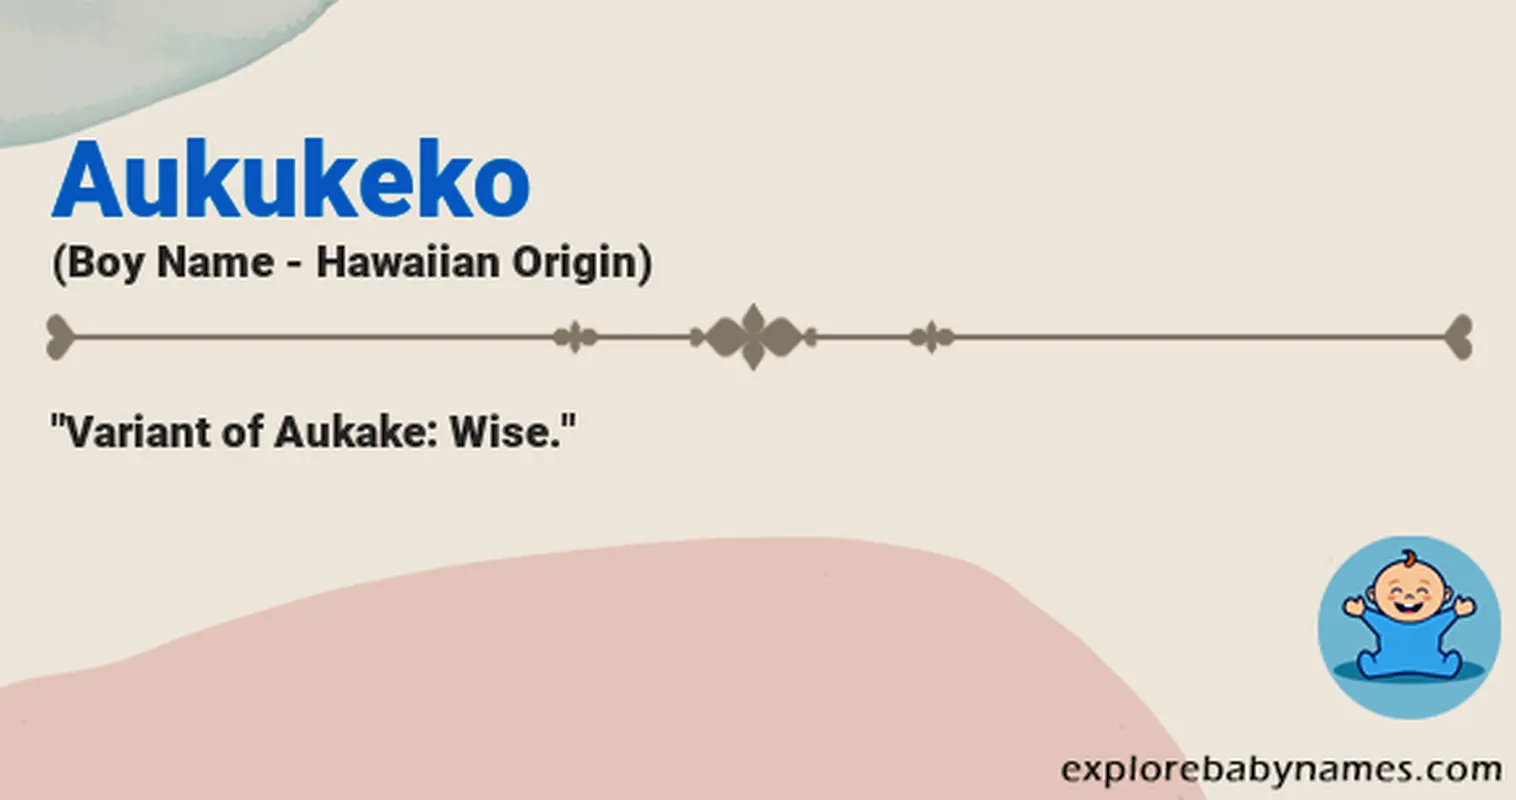 Meaning of Aukukeko